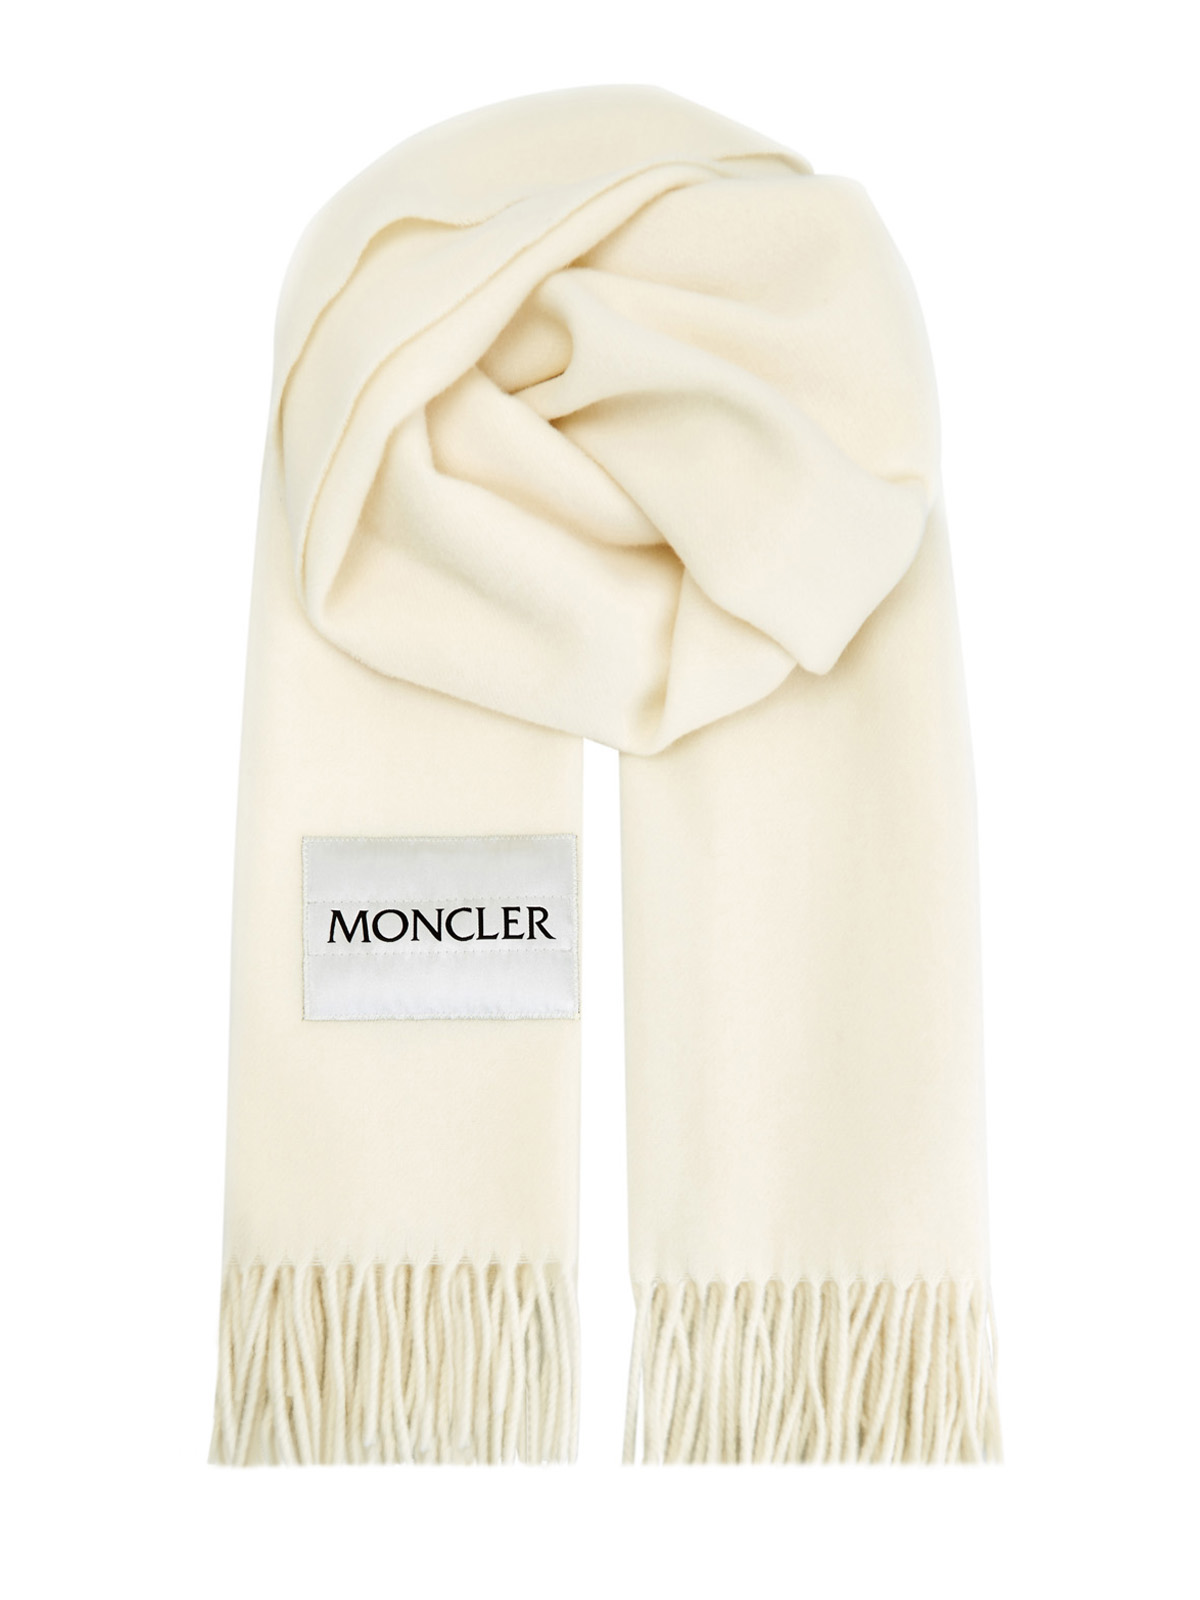 Объемный шарф из шерсти с длинной бахромой и нашивкой MONCLER, цвет белый, размер M;L;XL